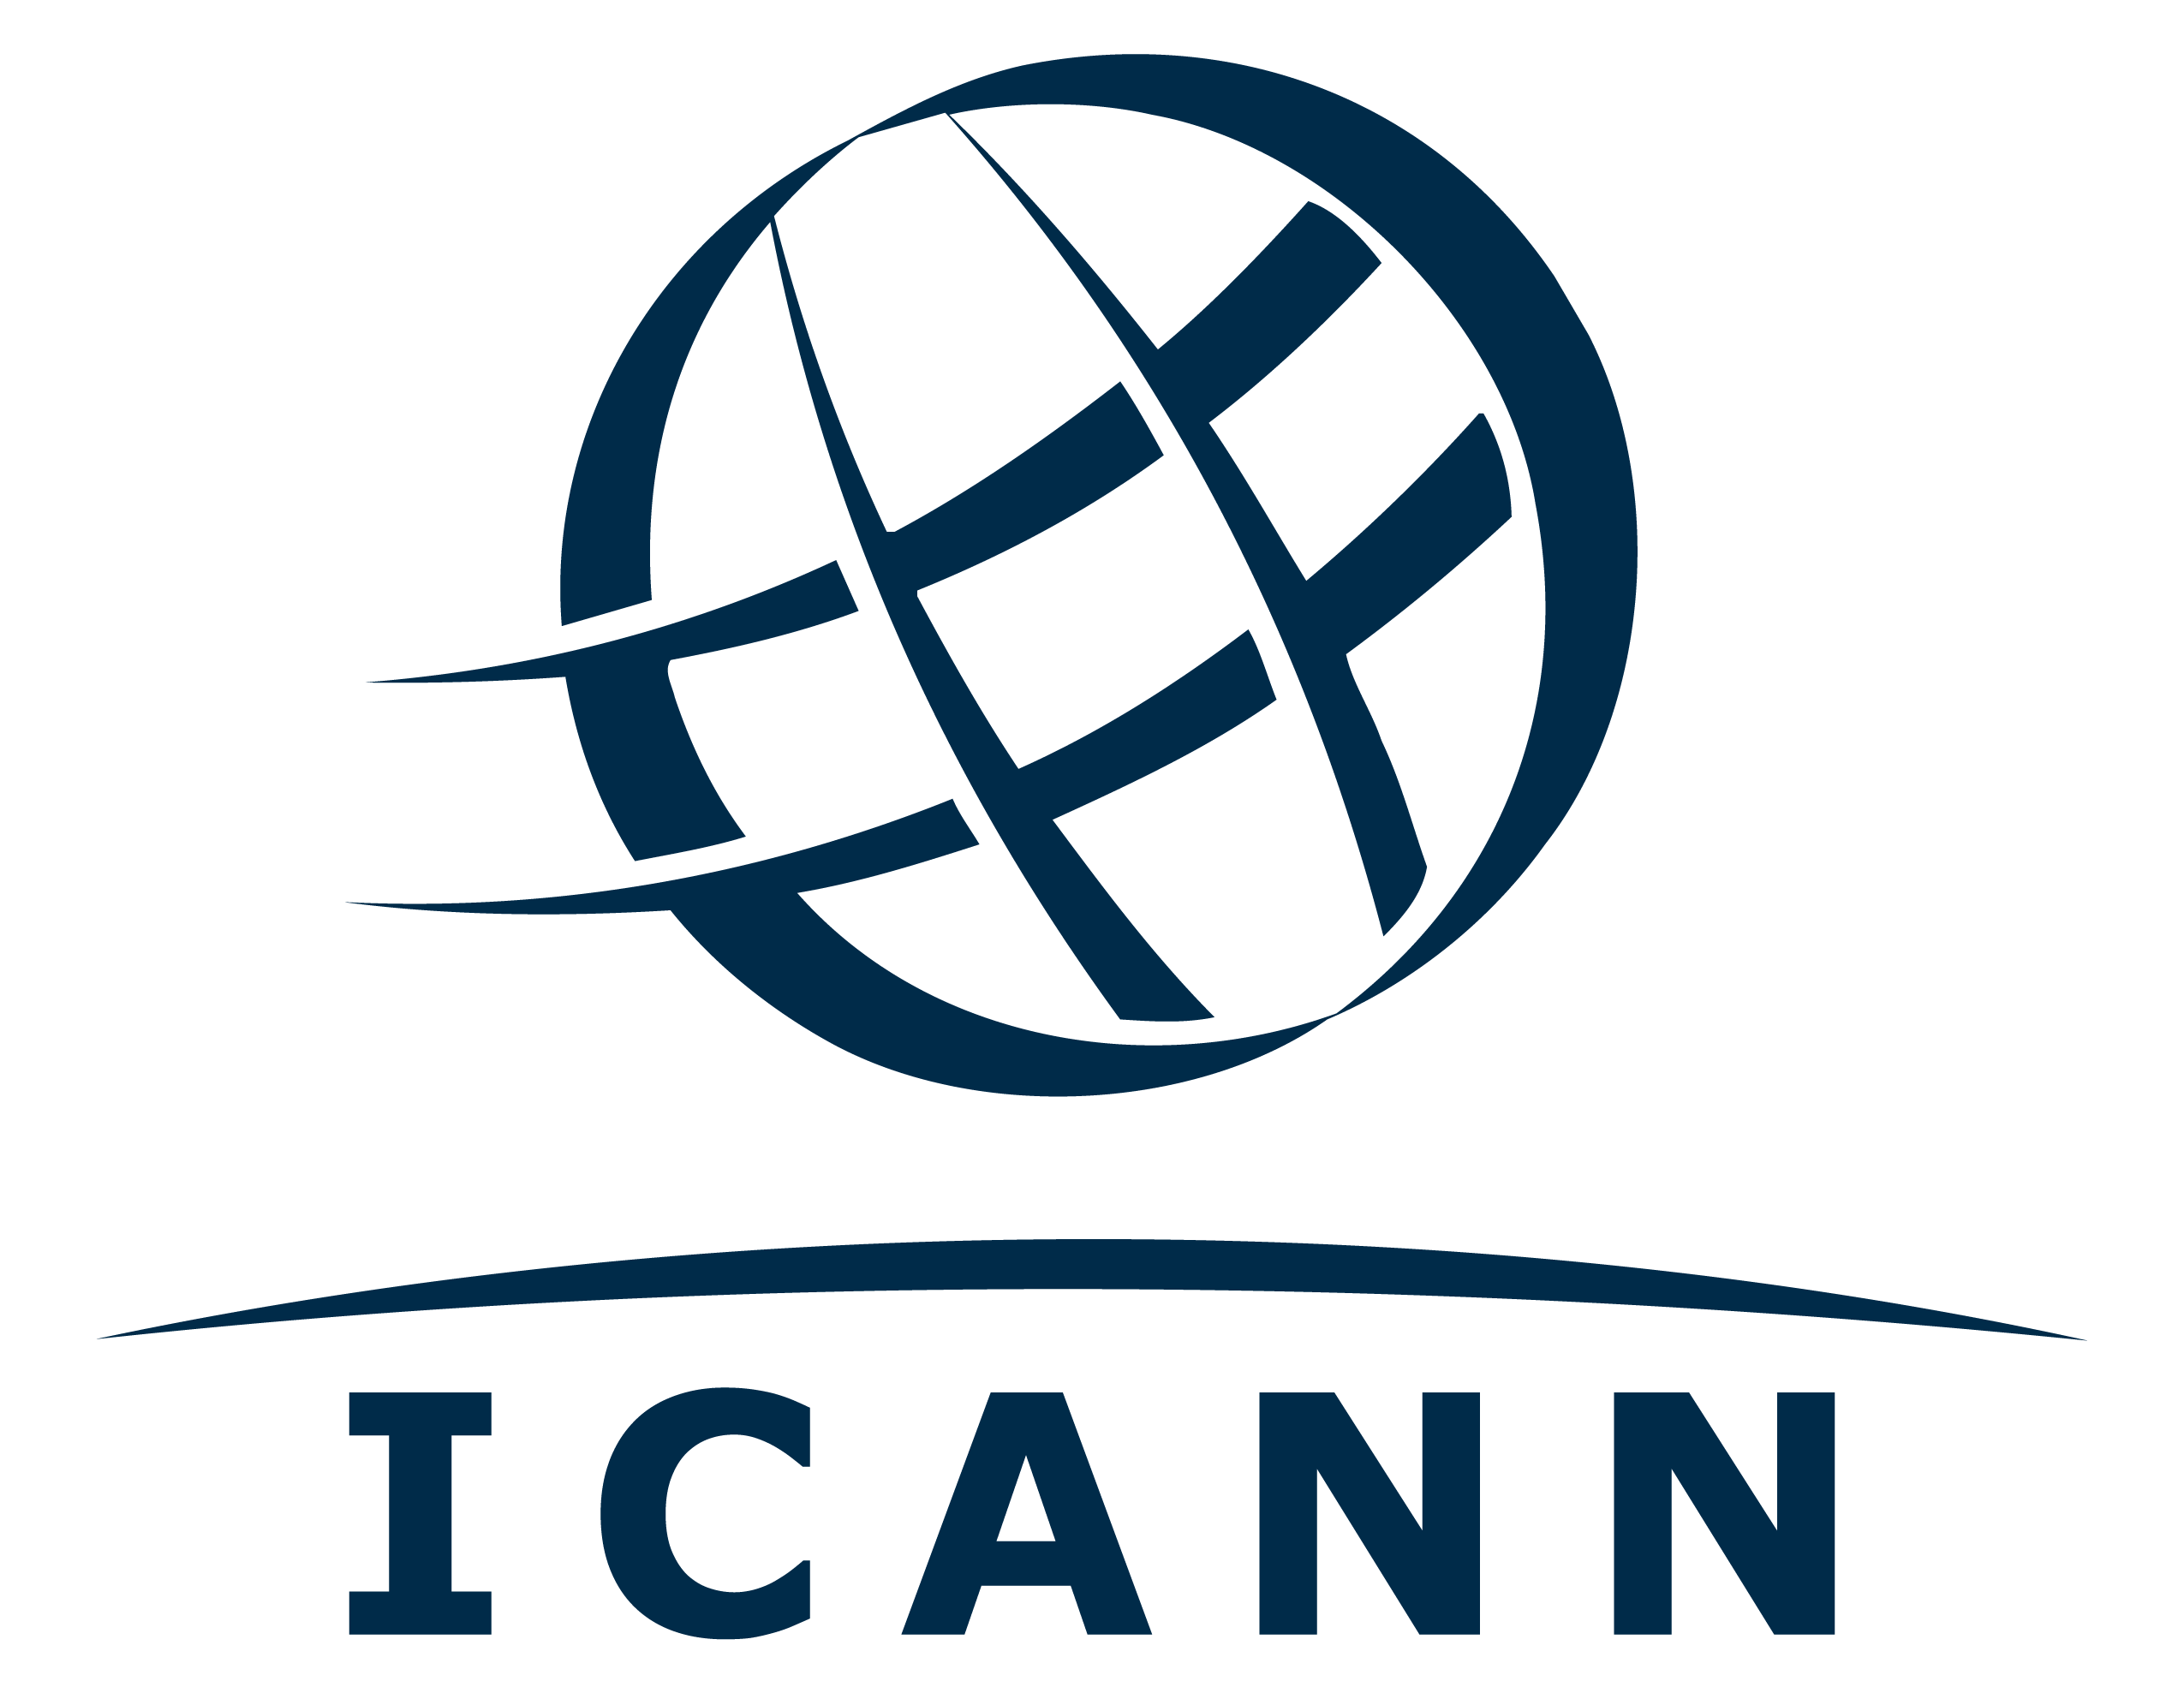 IANA logo